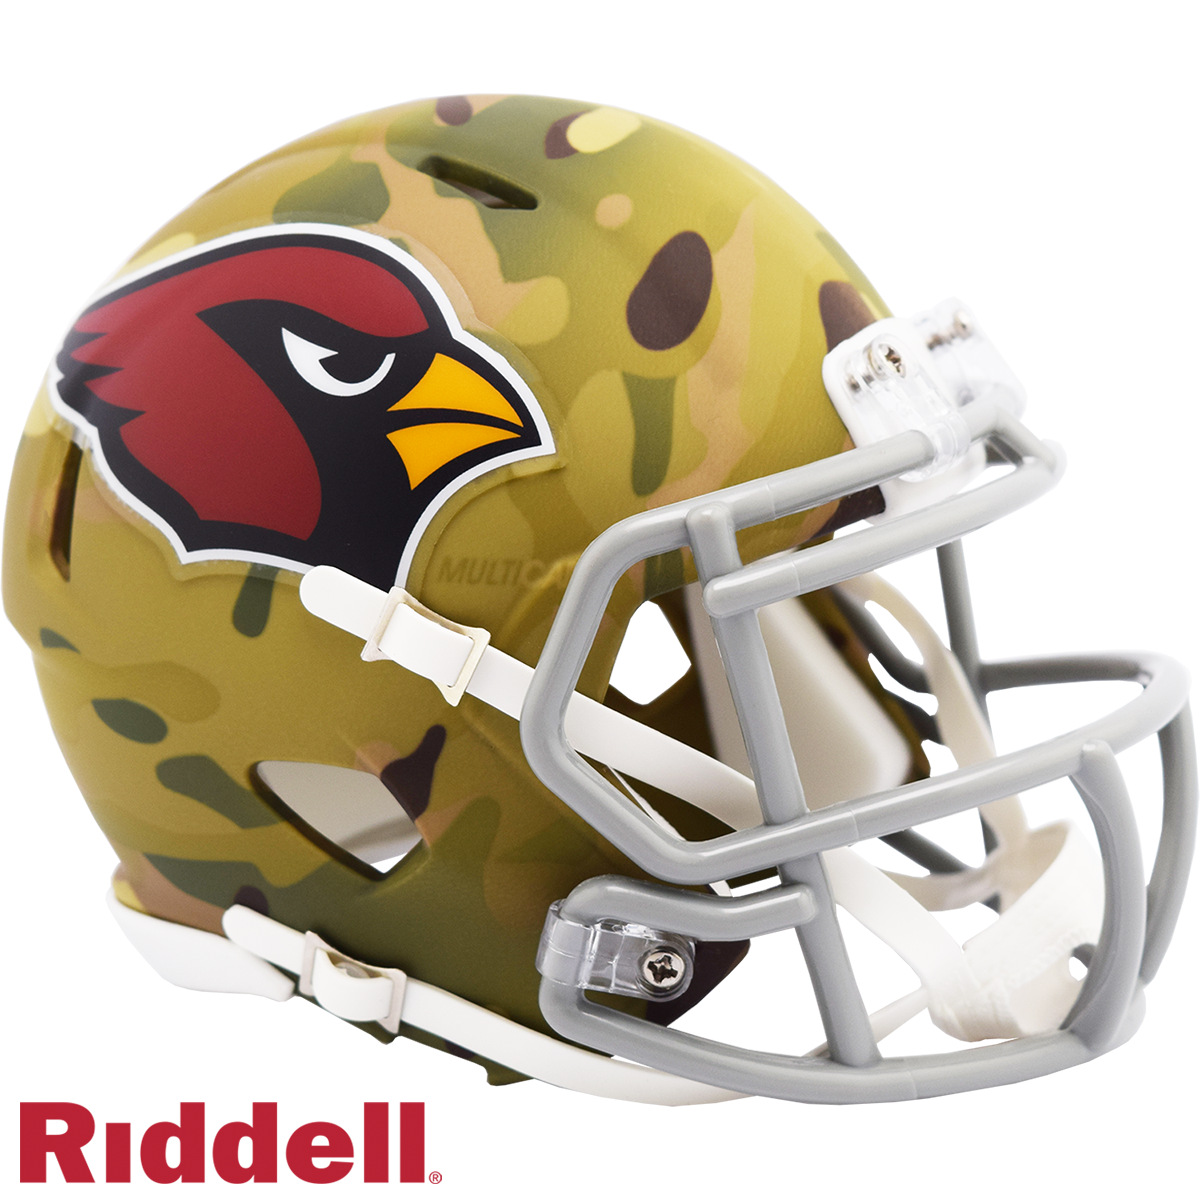 Arizona Cardinals Alternate helmet, get your Cardinals helmets now